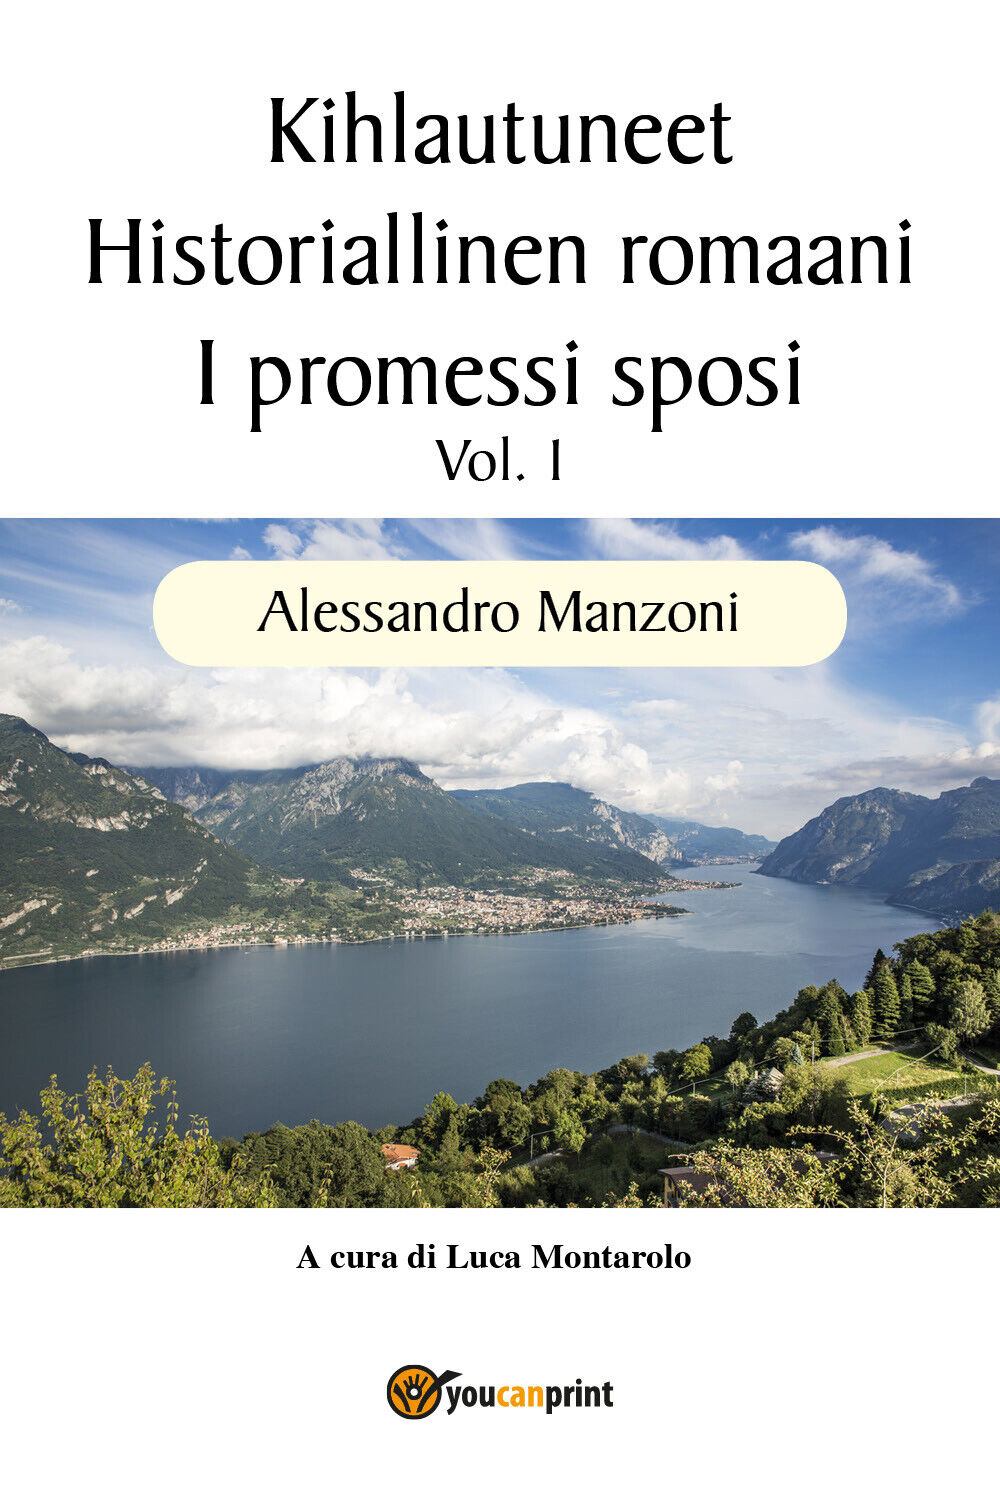 Kihlautuneet - Historiallinen romaani - I promessi sposi Vol. 1